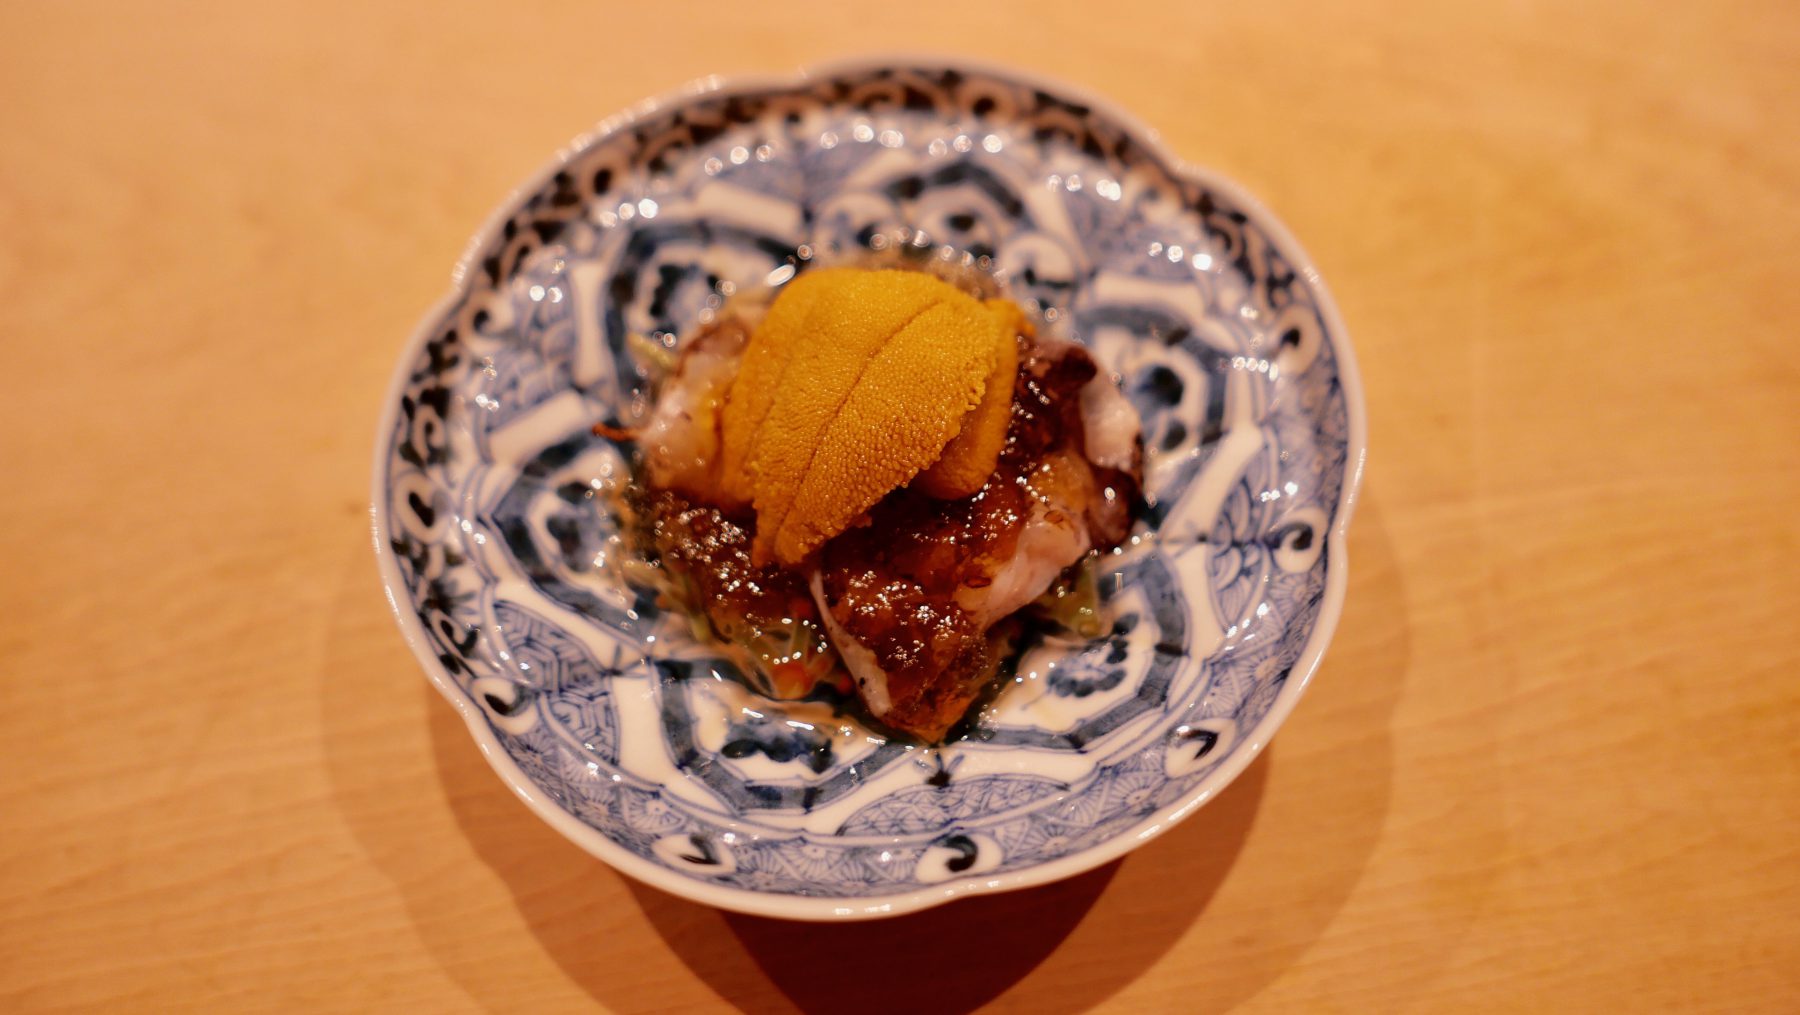 Sea urchin and dashi appetizer at Kurosaki sushi, Tokyo